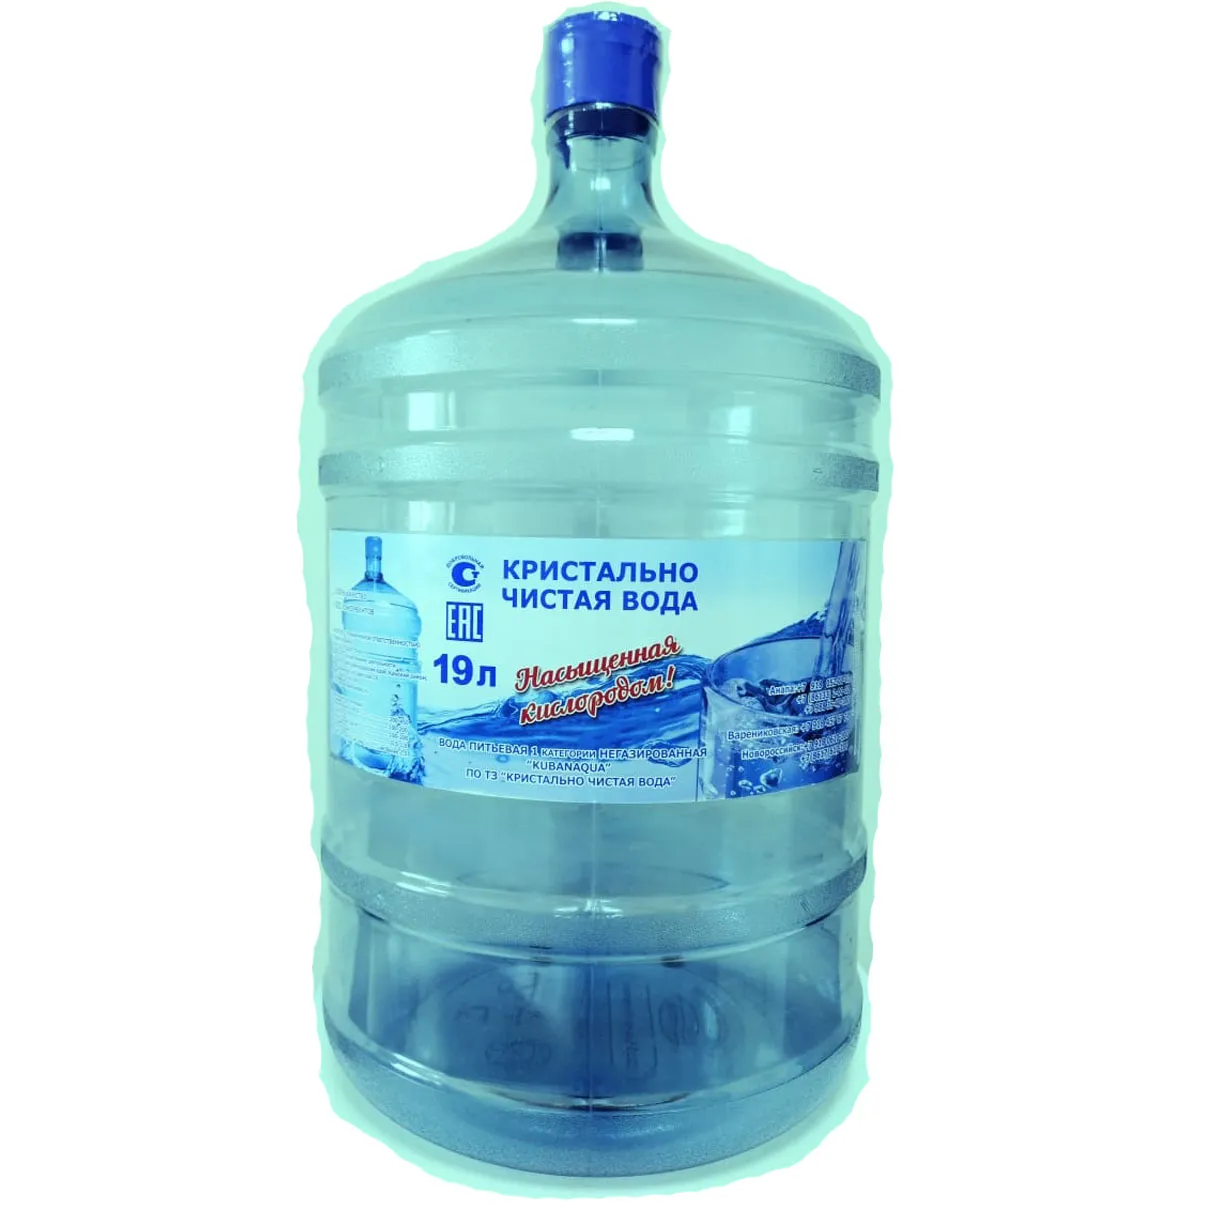 Заказать воду дешево. Вода в бутылях. Бутилированной воды. Чистая вода. Чистая вода в бутылях.